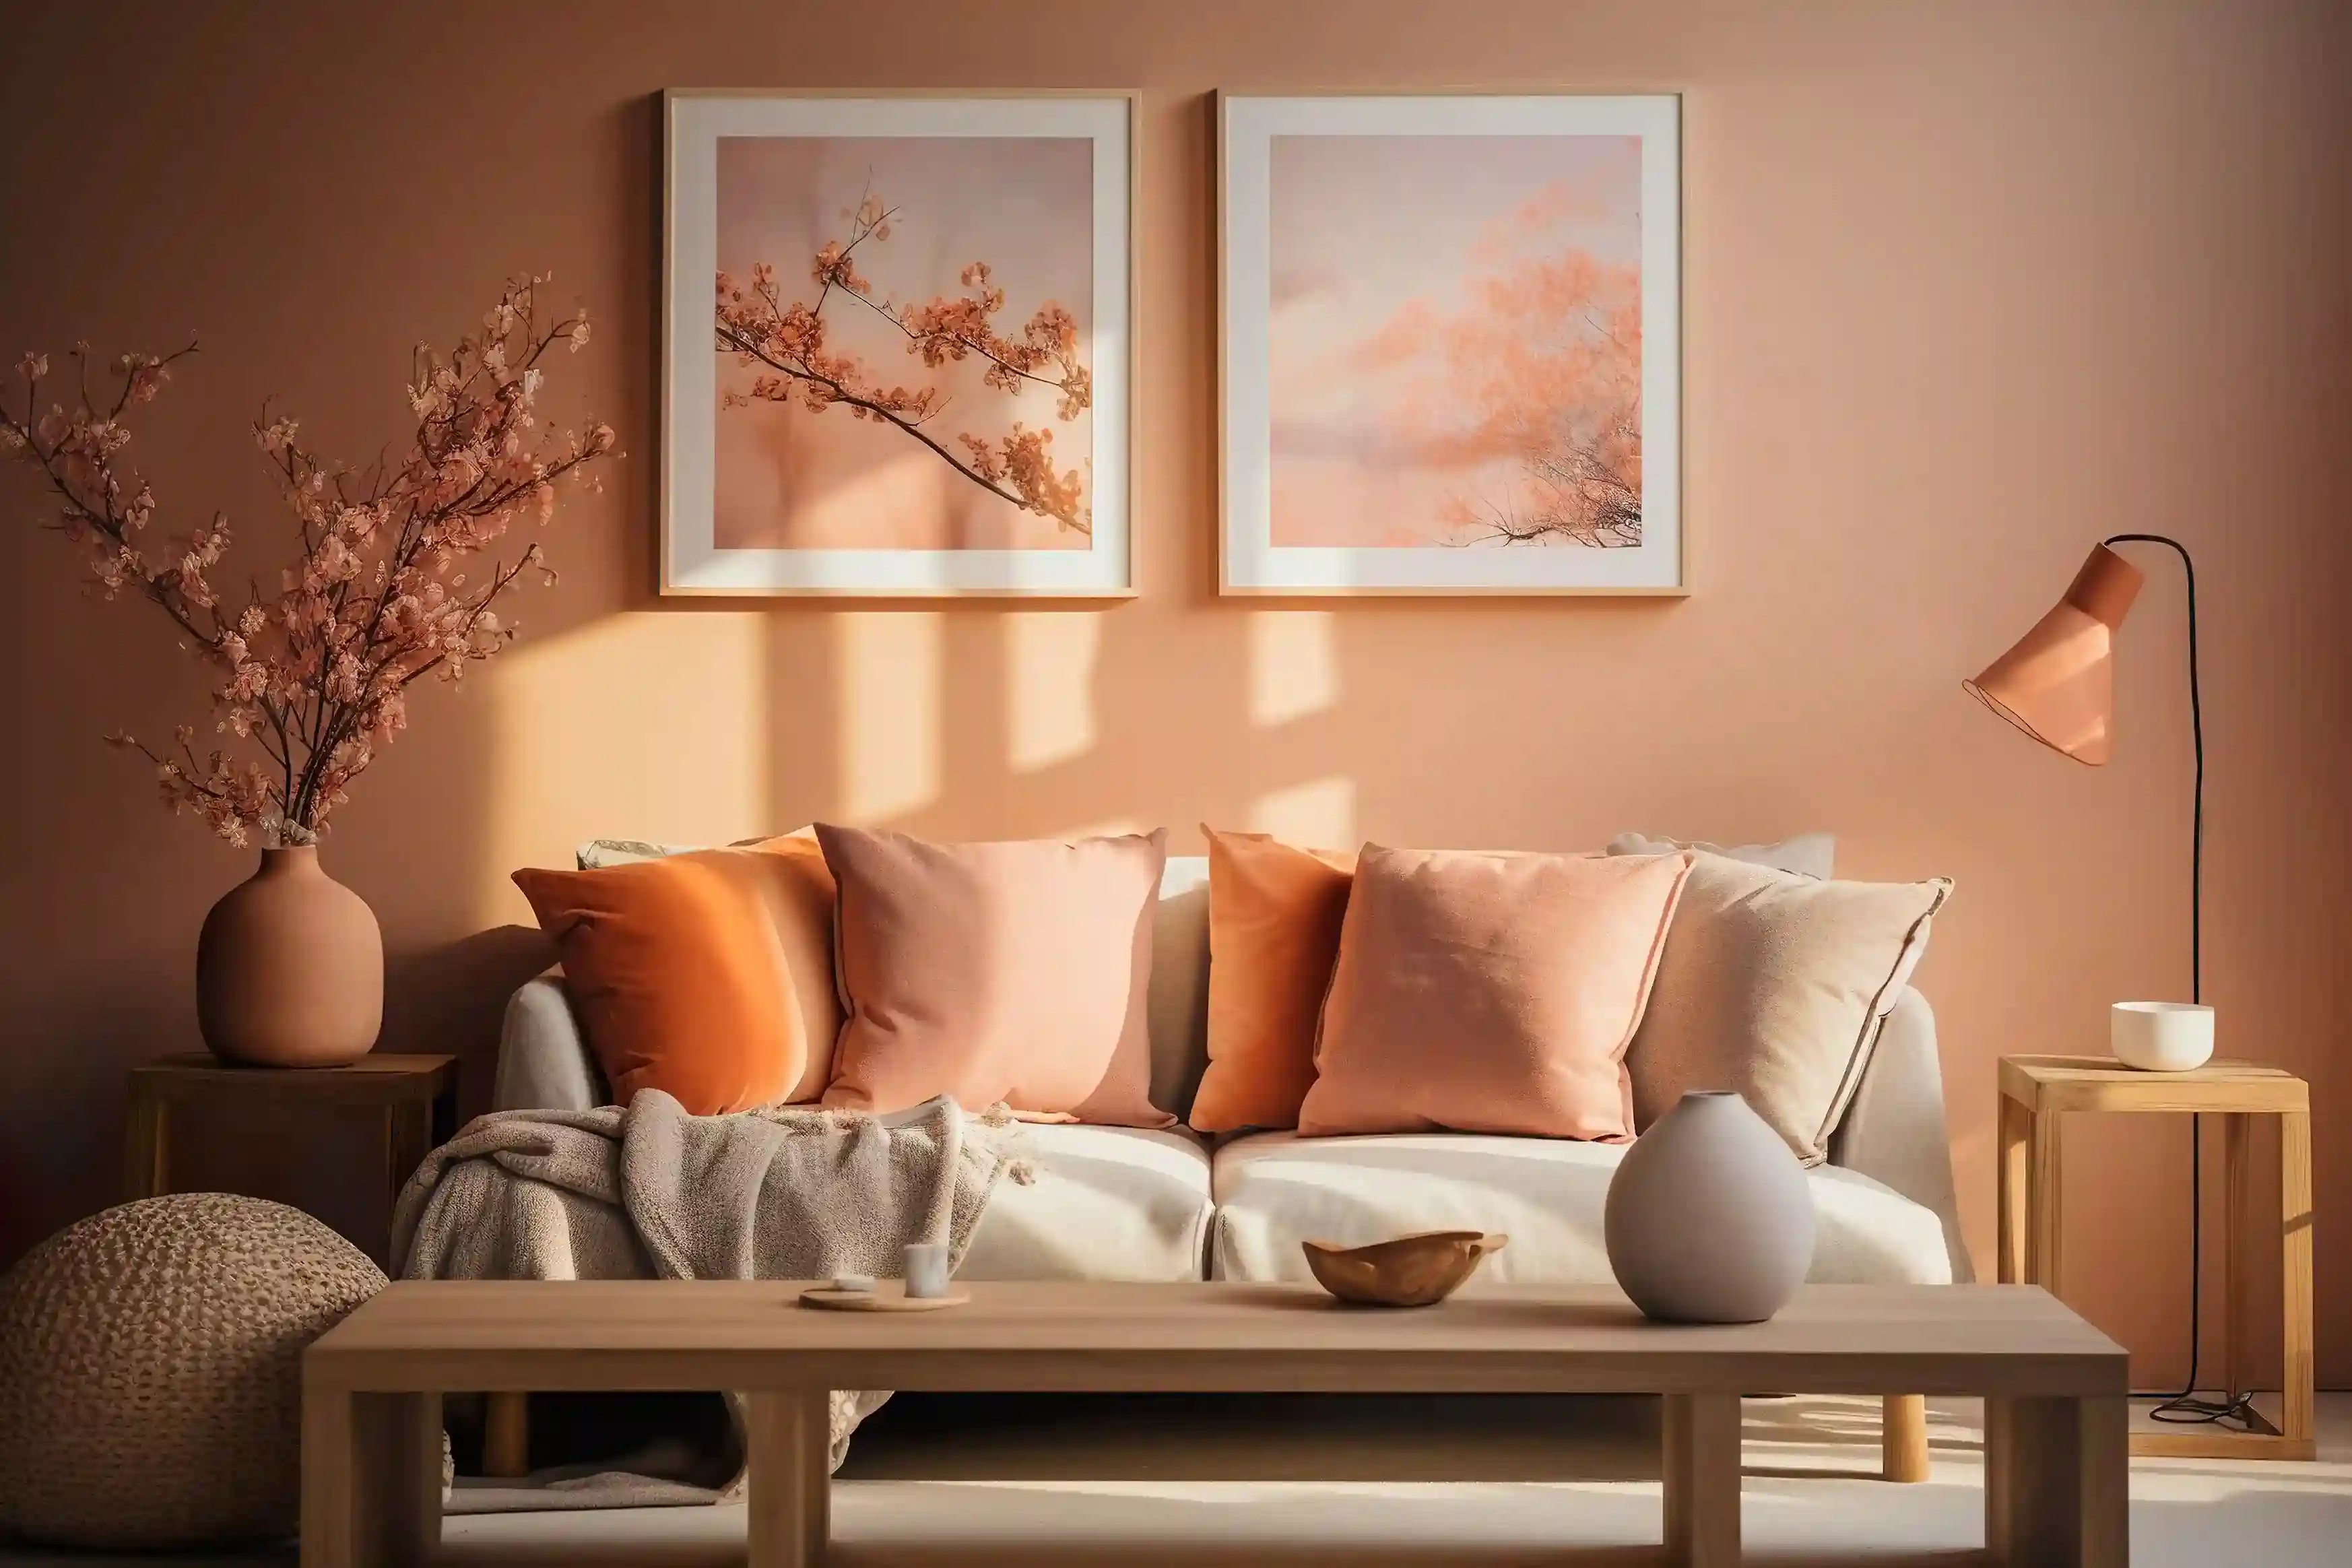 Salon w stylu japandi w kolorze peach fuzz. Na środku znajduje się beżowa kanapa, na niej pomarańczowe poduszki, a nad kanapą dwa obrazy. Przed kanapą stoi drewniany stolik.